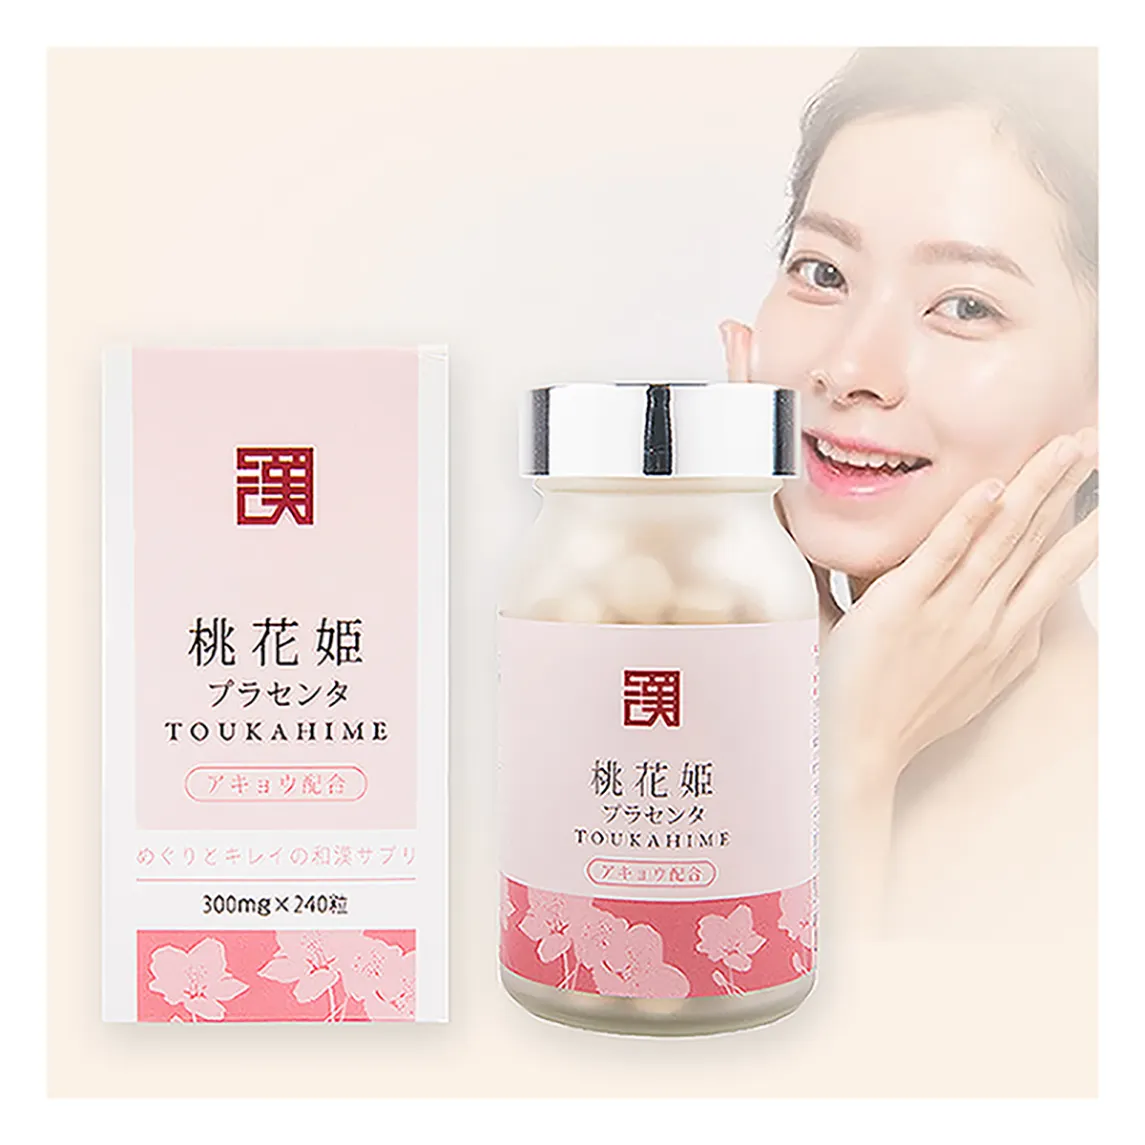 Suplementos de clareamento da pele e produtos de beleza japoneses